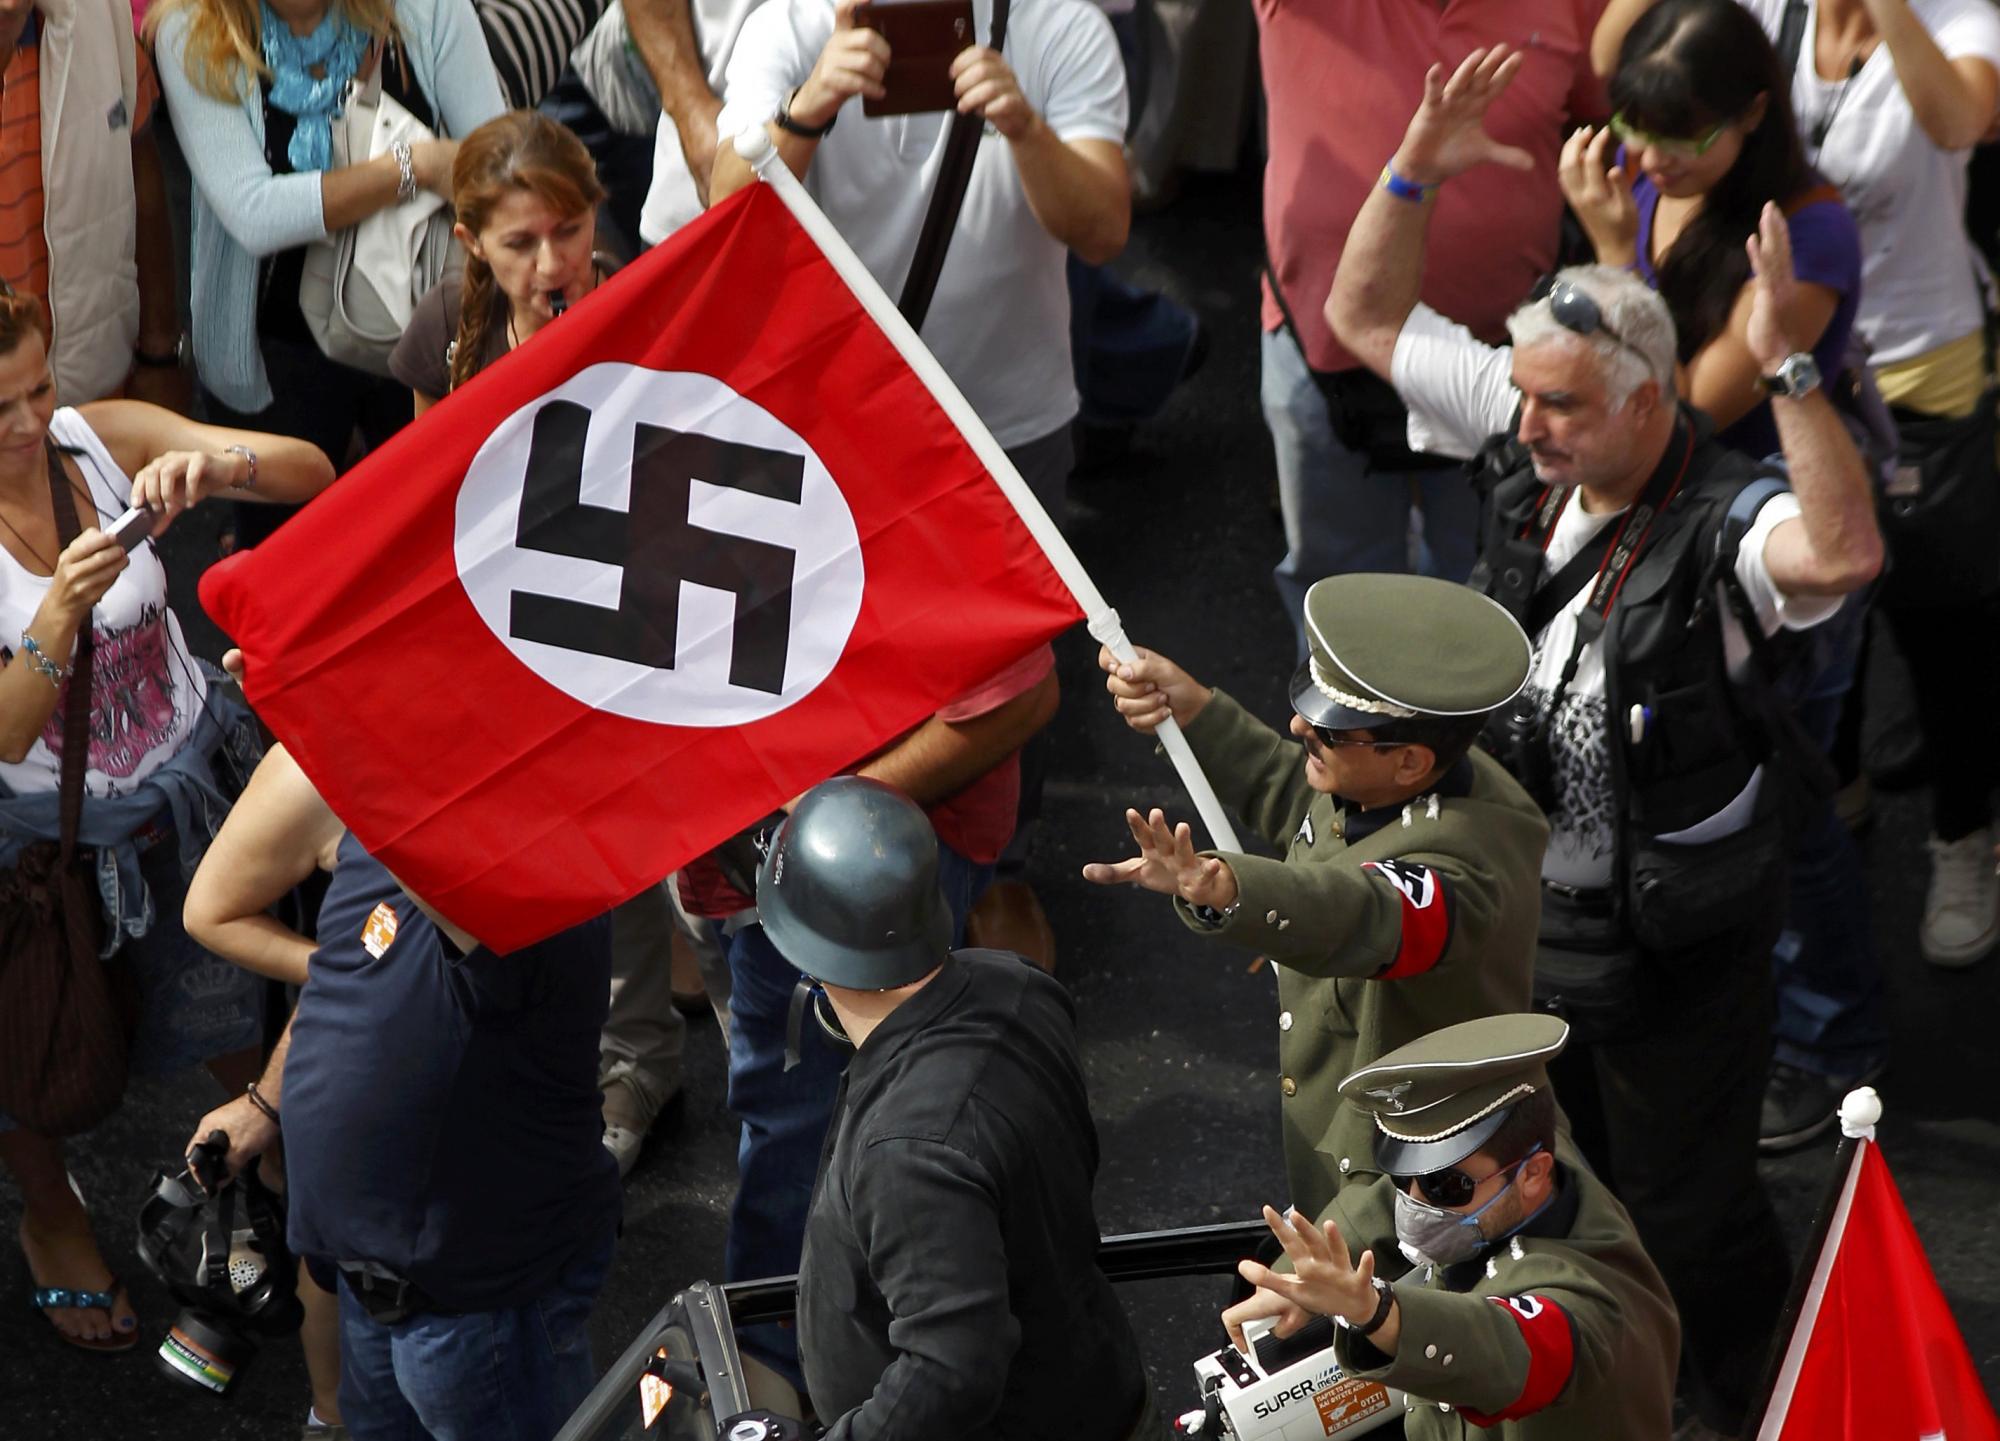 裸奔、烧旗、骚乱 默克尔访希腊遭5万人抗议被喻希特勒